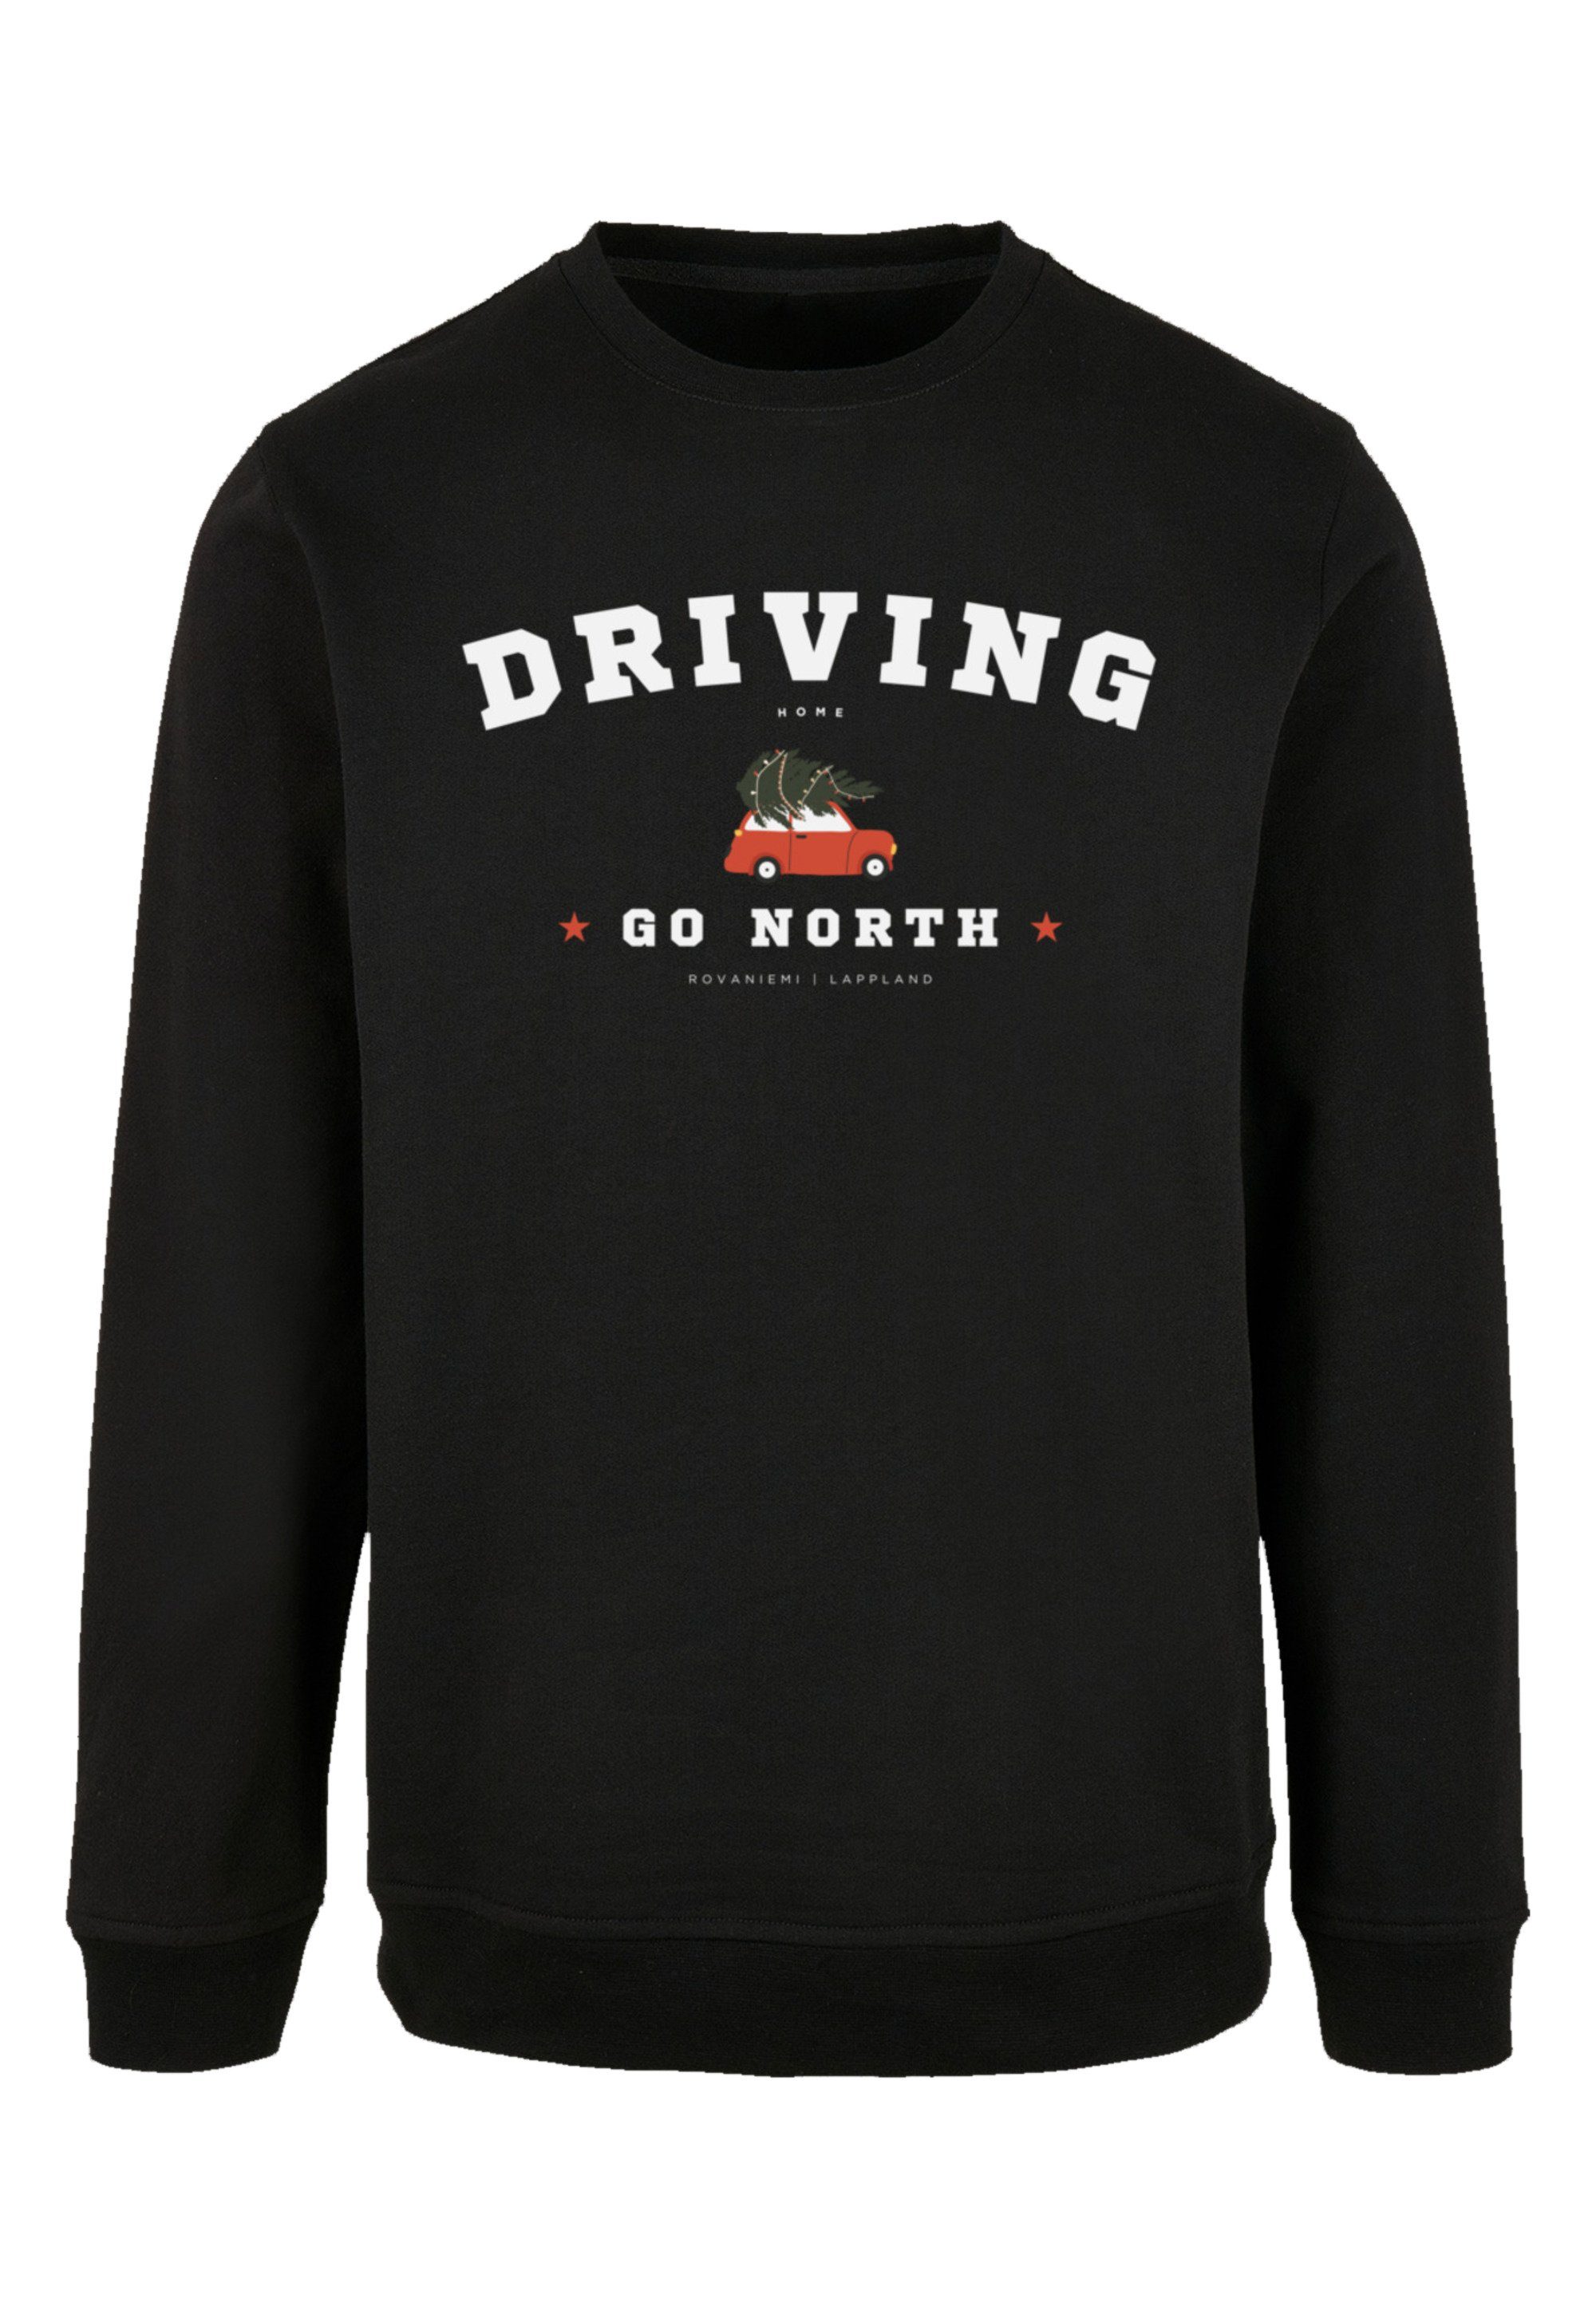 Sweatshirt Weihnachten Home Logo, mit Geschenk, Sweater Driving Komfortabler Crewneck-Ausschnitt F4NT4STIC Weihnachten,